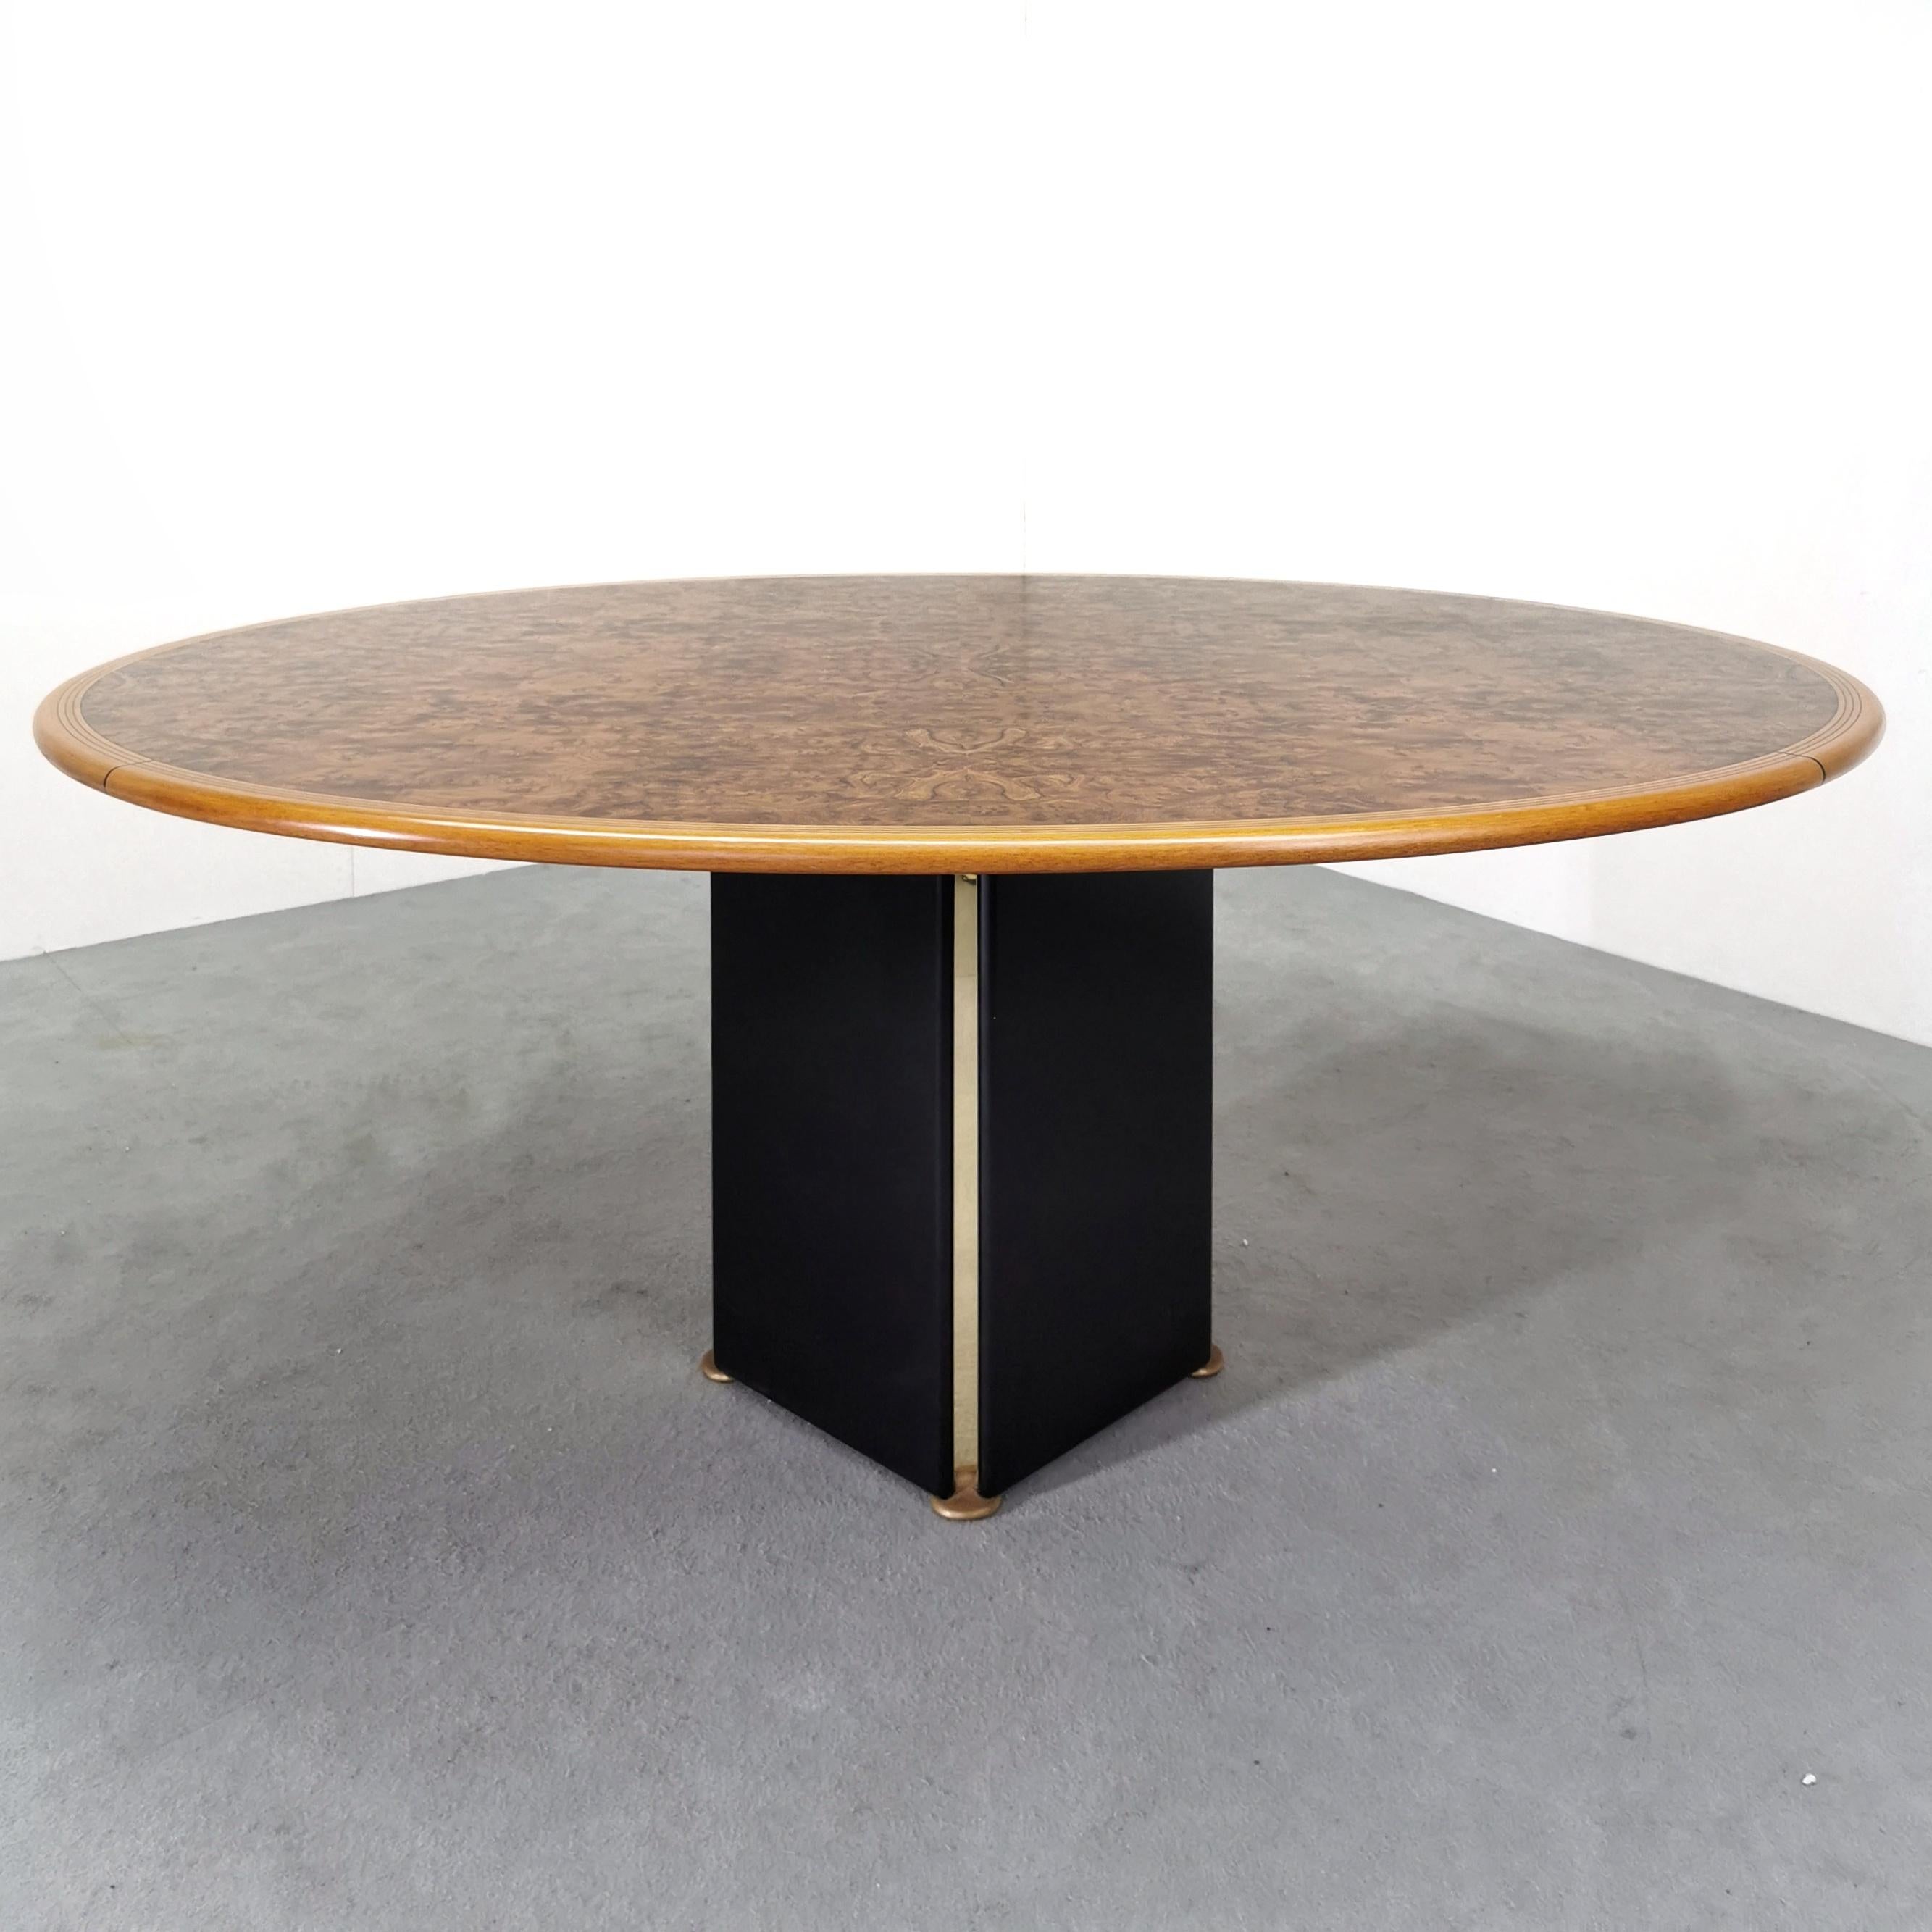 Fantastischer ovaler Esstisch aus Bruyère, Walnuss und Messing von Afra & Tobia Scarpa. 
Dieser Tisch wurde von den berühmten Designern Afra und Tobia Scarpa entworfen und von Maxalto hergestellt.
Maxalto ist eine von B&B Italia gegründete Marke,